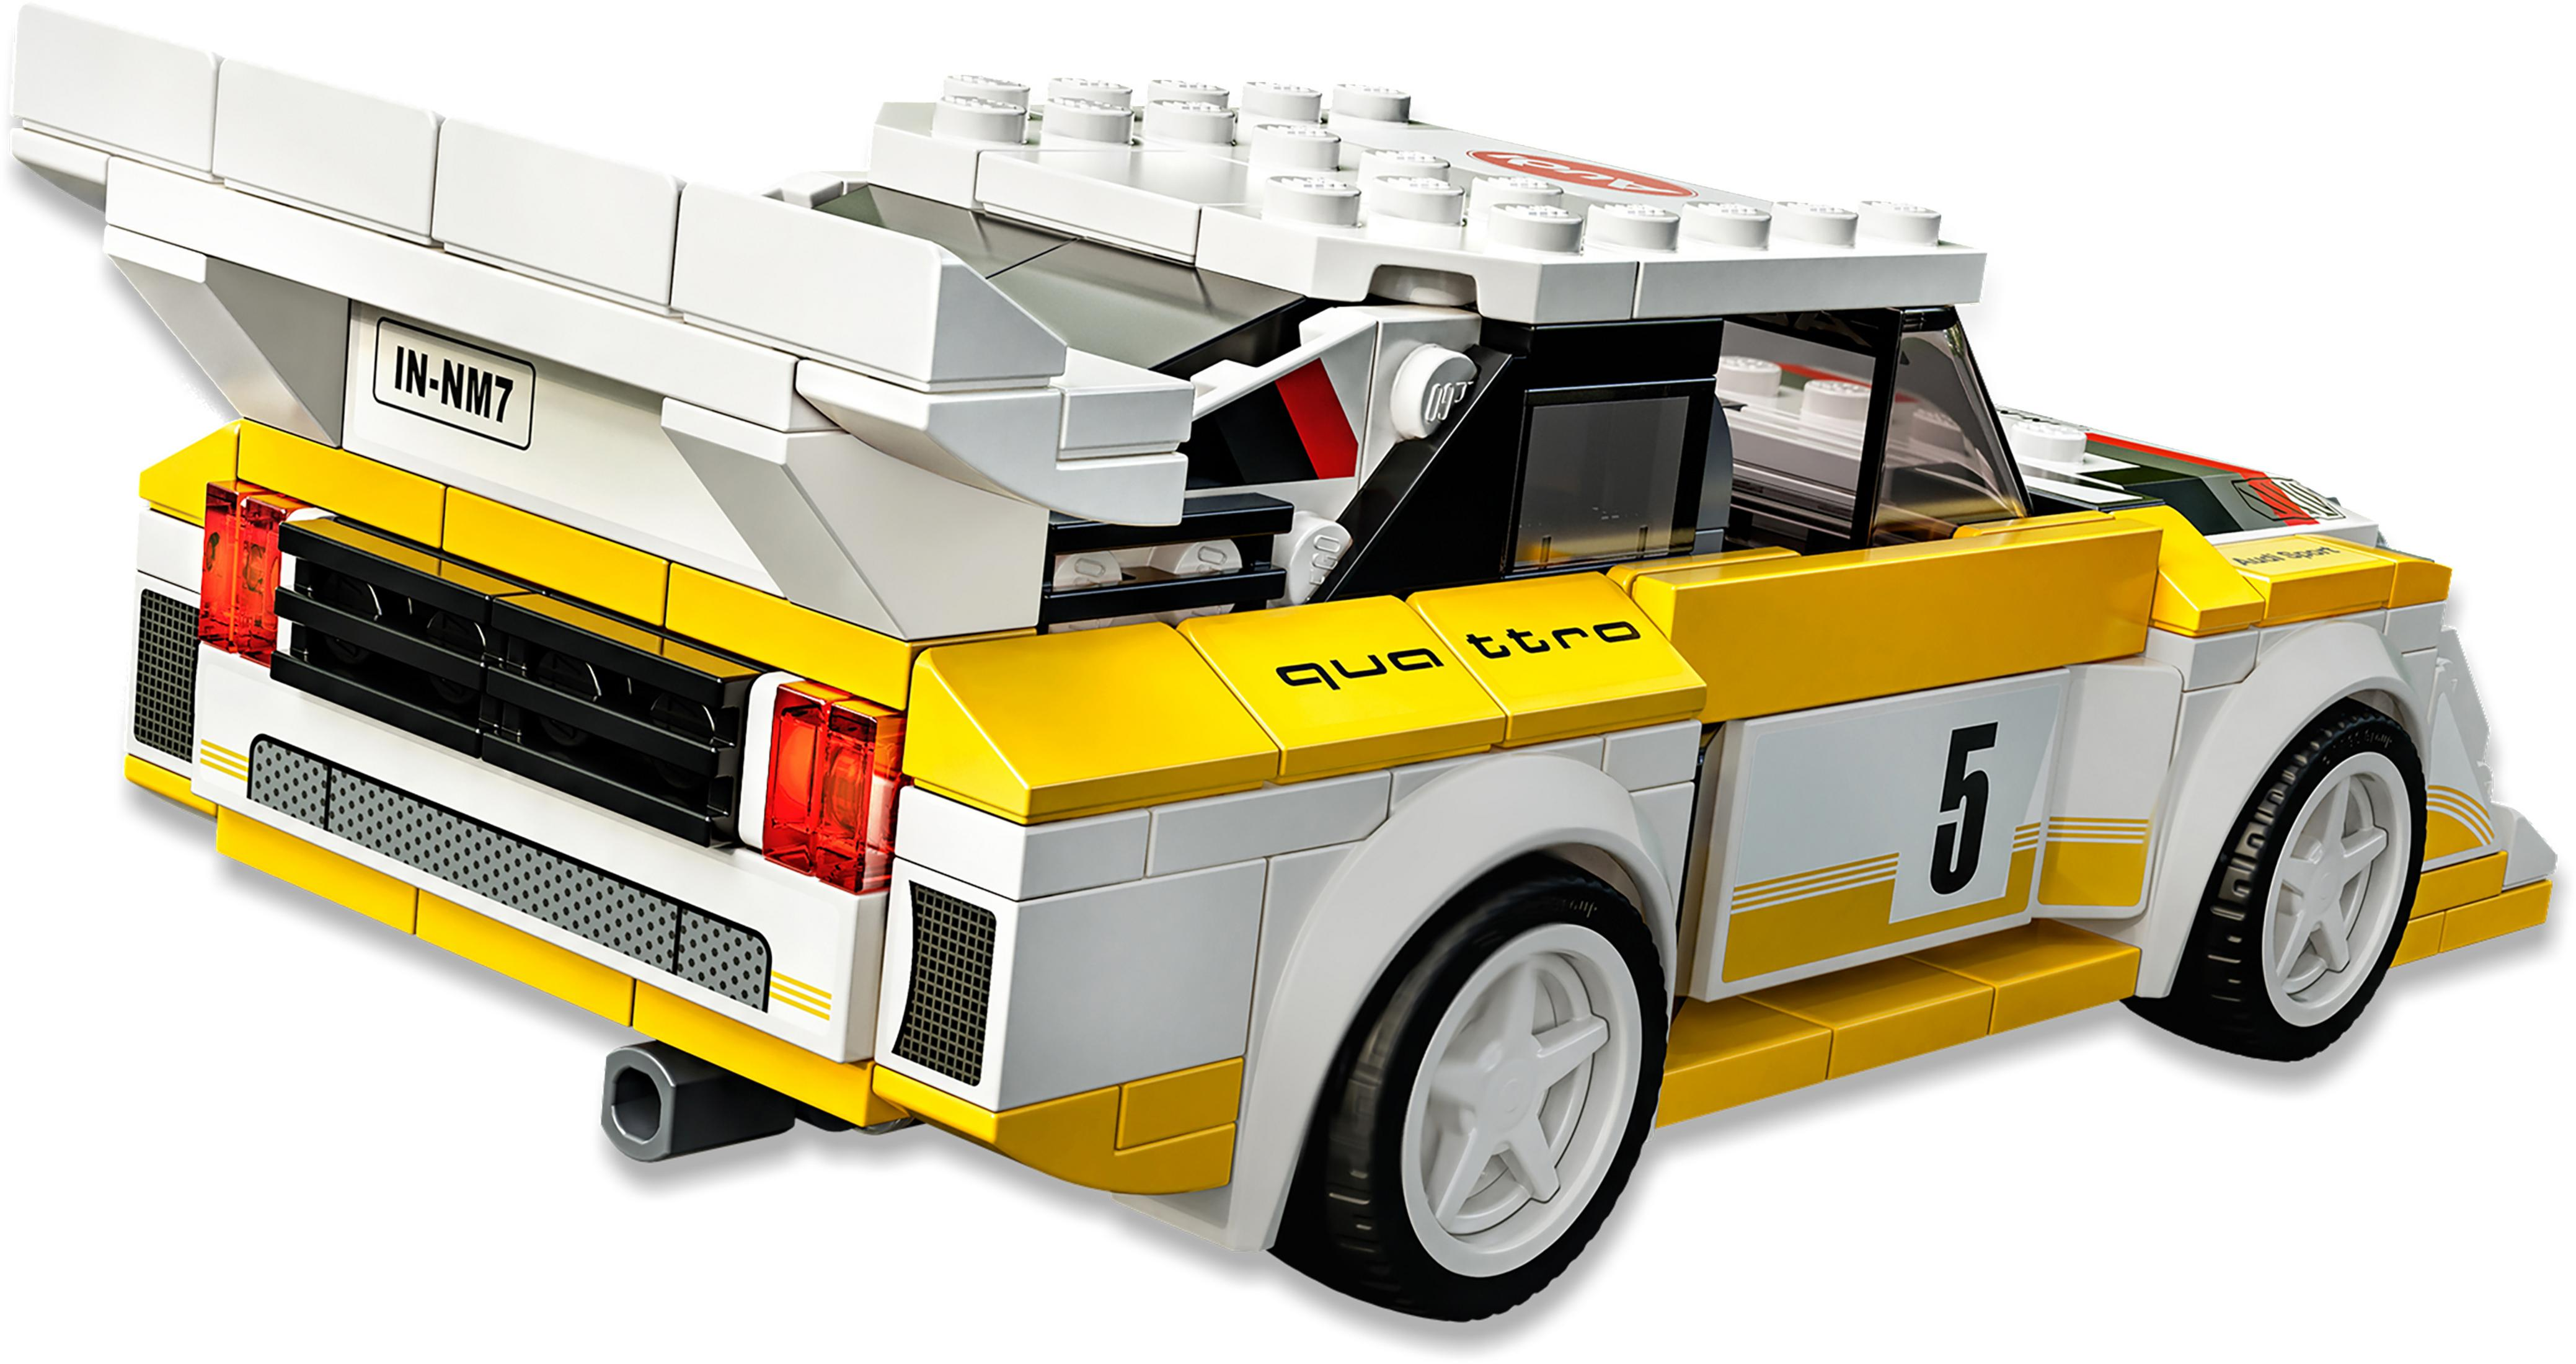 AUDI SPORT Bausatz, QUATTRO 76897 1985 S1 Mehrfarbig LEGO